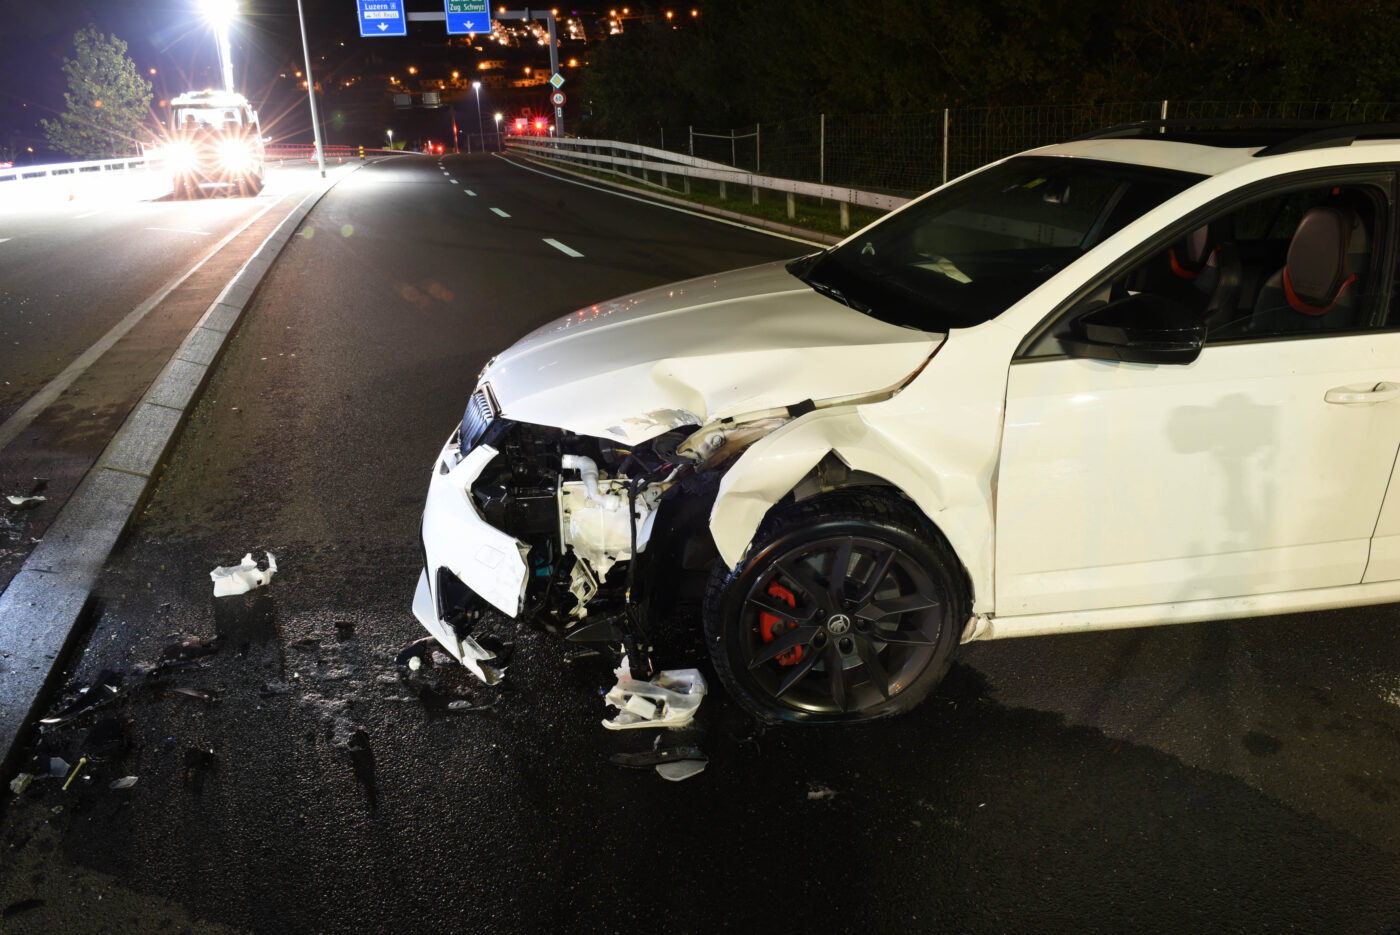 Zwei Selbstunfälle: Eine stark alkoholisierte Autofahrerin fährt gegen Beleuchtungskandelaber